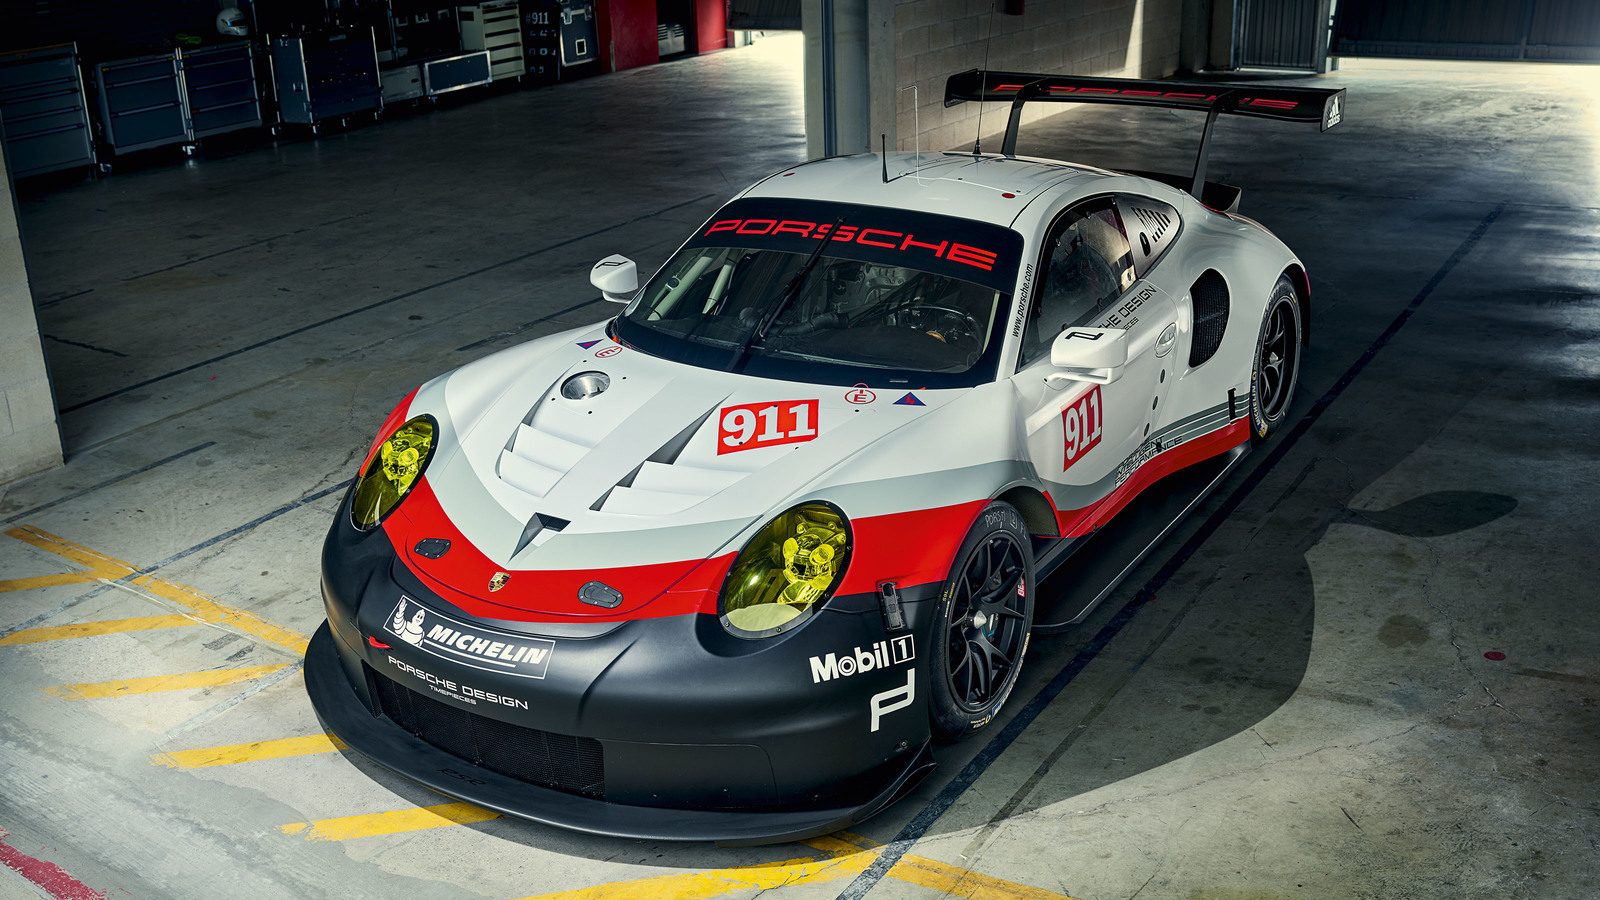 2018 Porsche 911 Rsr Porsche S Mid Engined 911 Race Car2018 Porsche 911 Rsr Porsche Supercars Net